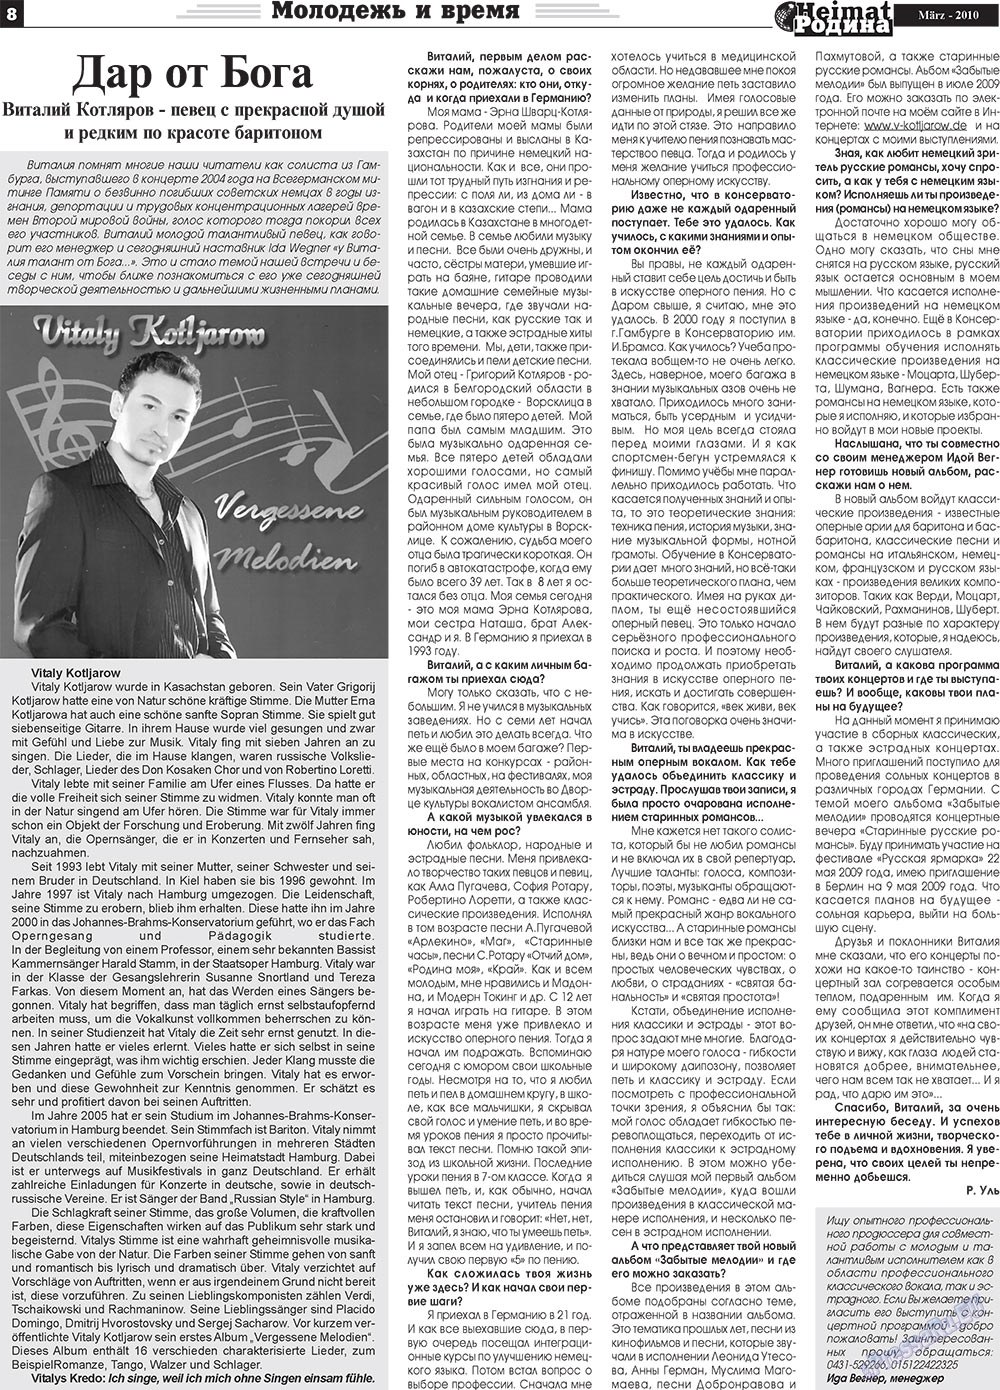 Heimat-Родина (газета). 2010 год, номер 3, стр. 8